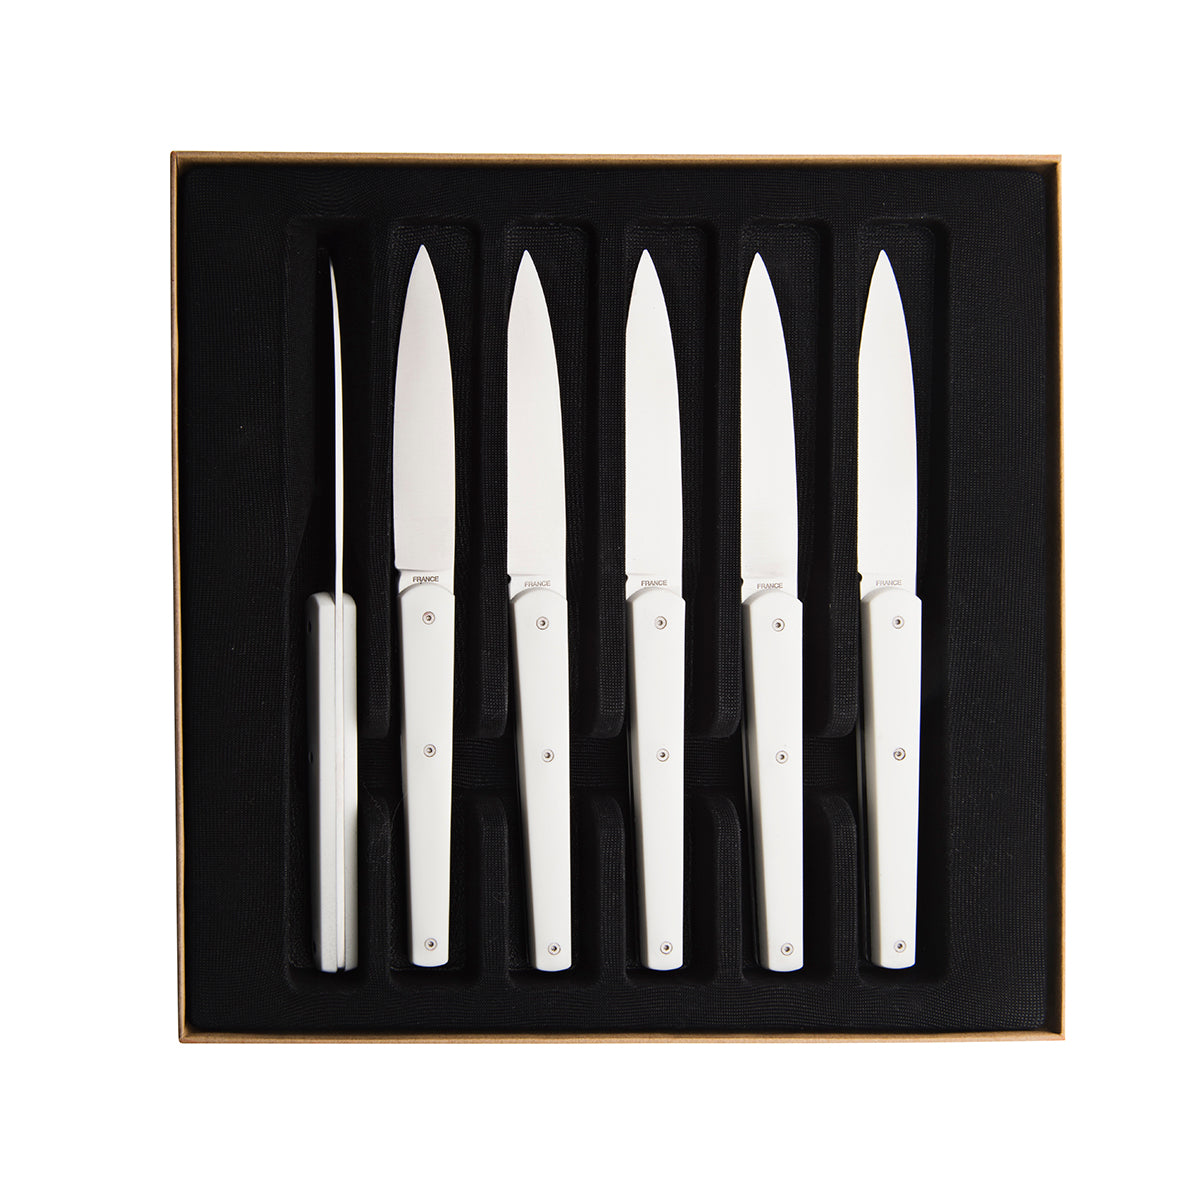 Steak Knives, Set of 6- White